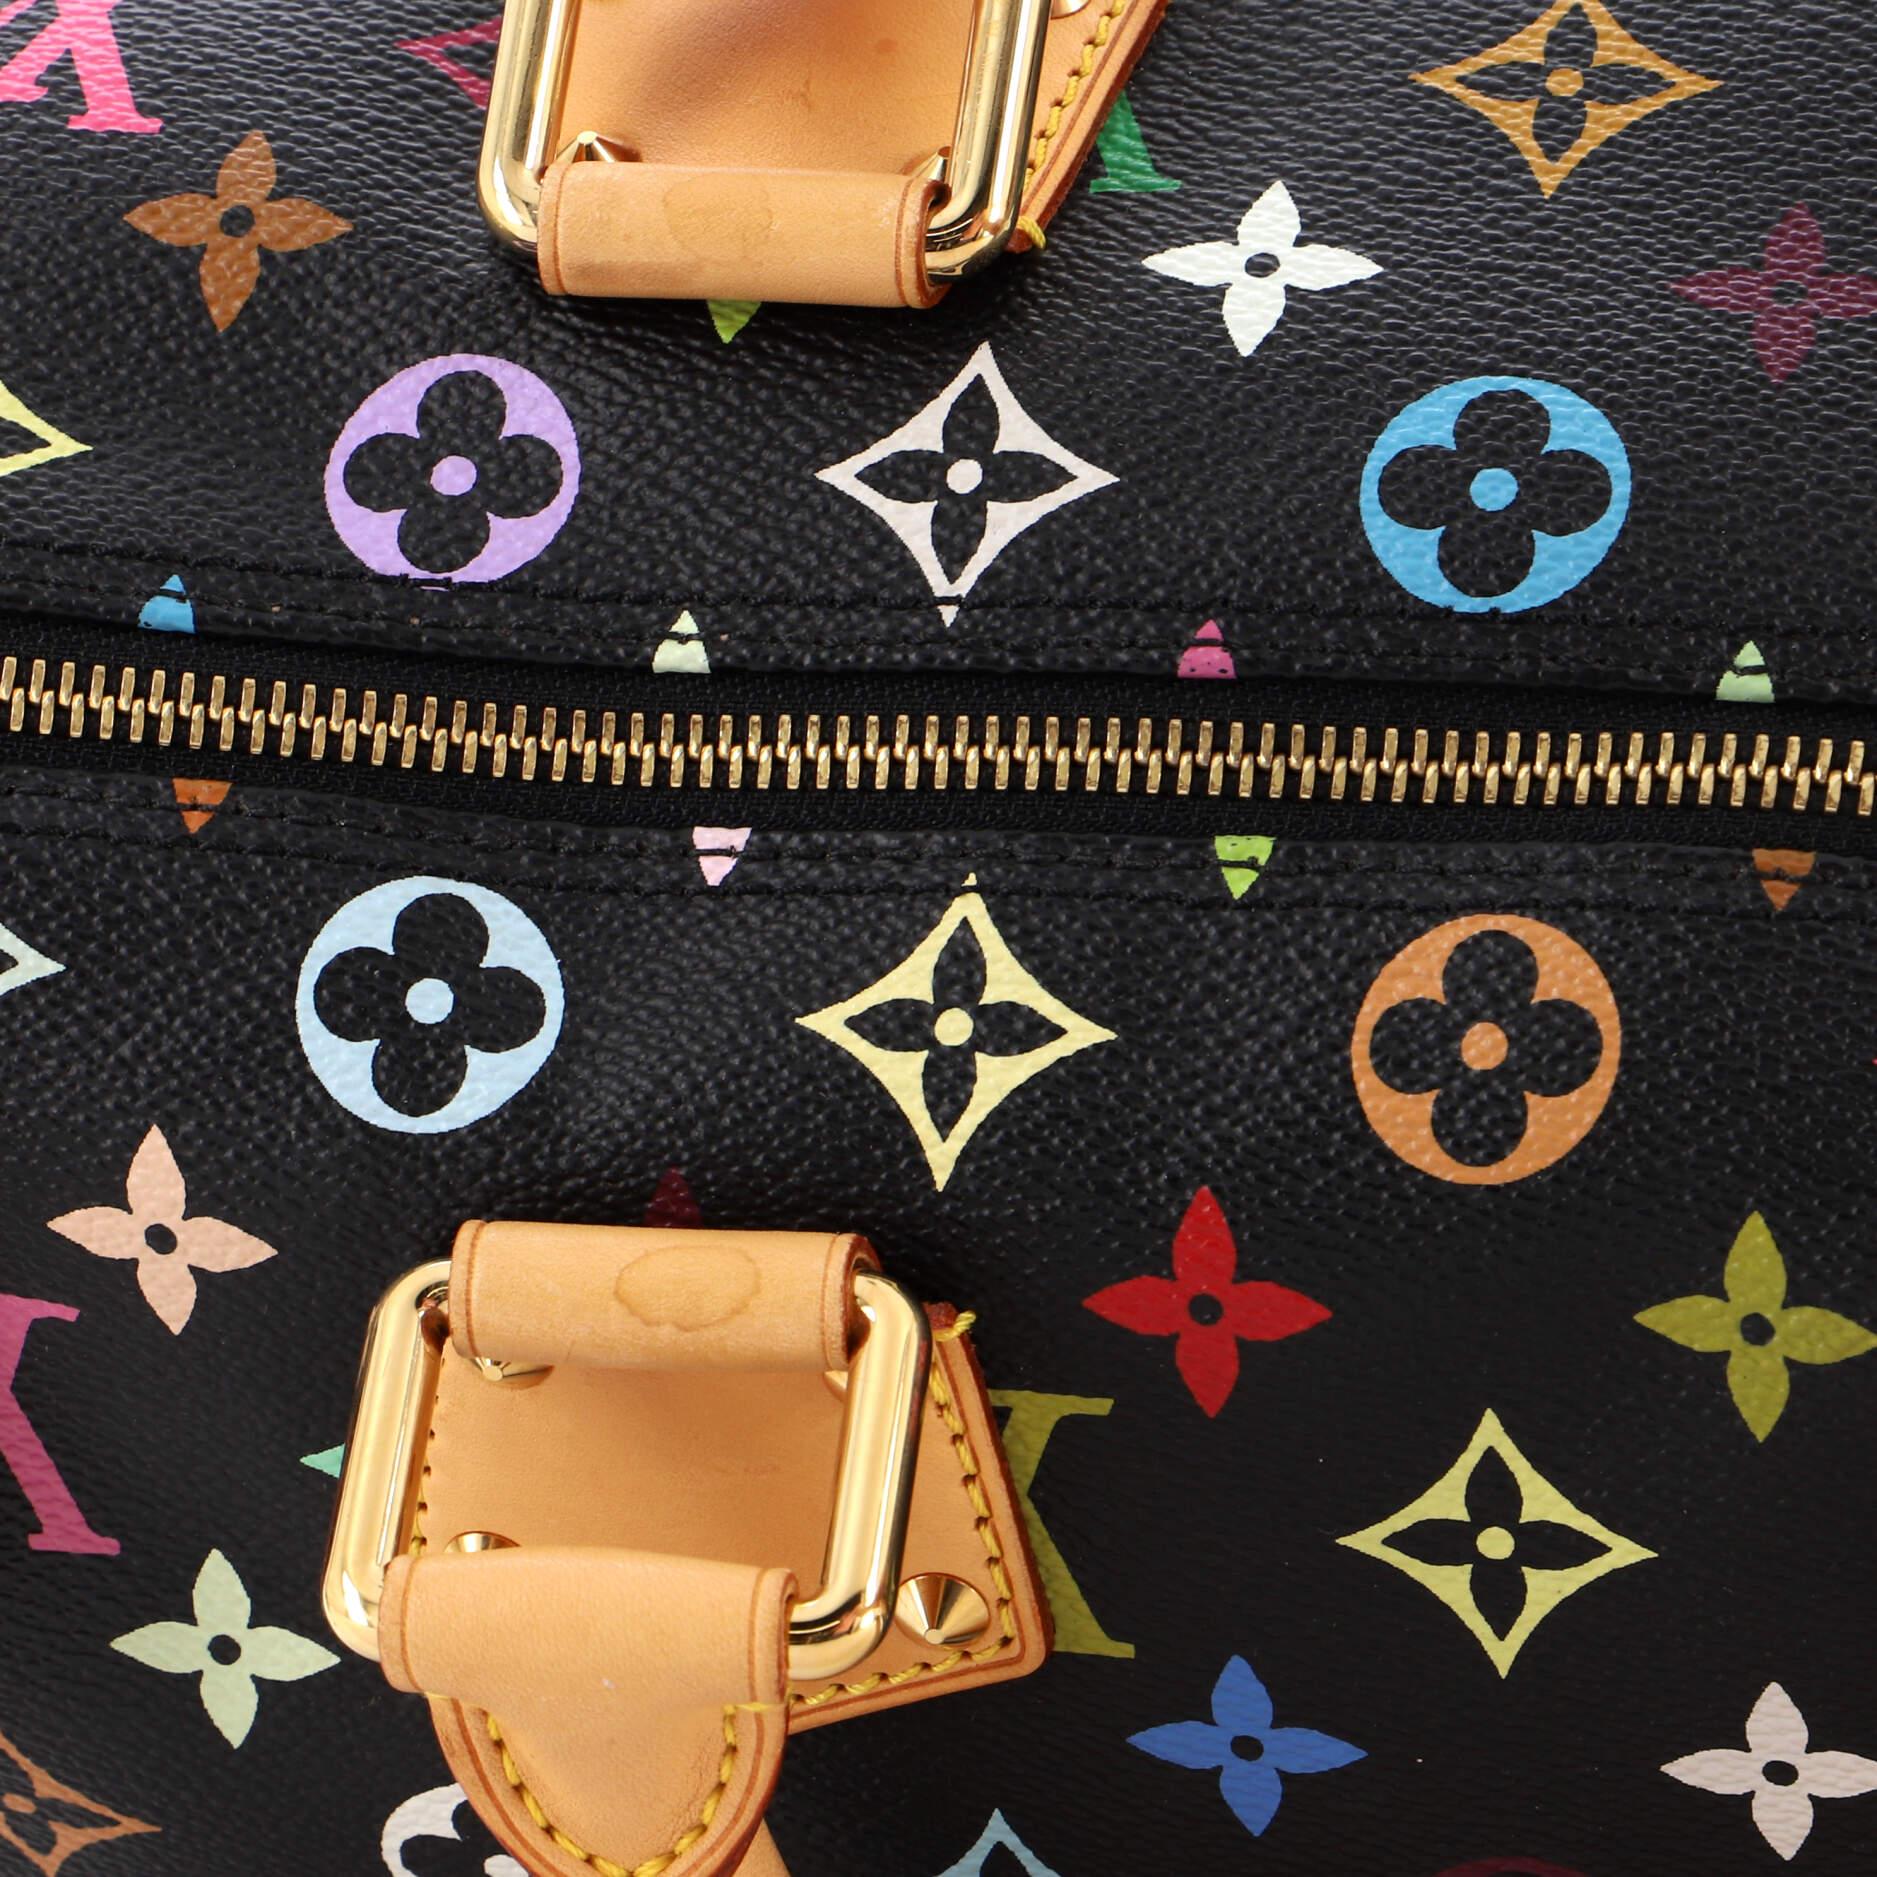 Louis Vuitton Speedy Handbag Monogram Multicolor 30 4